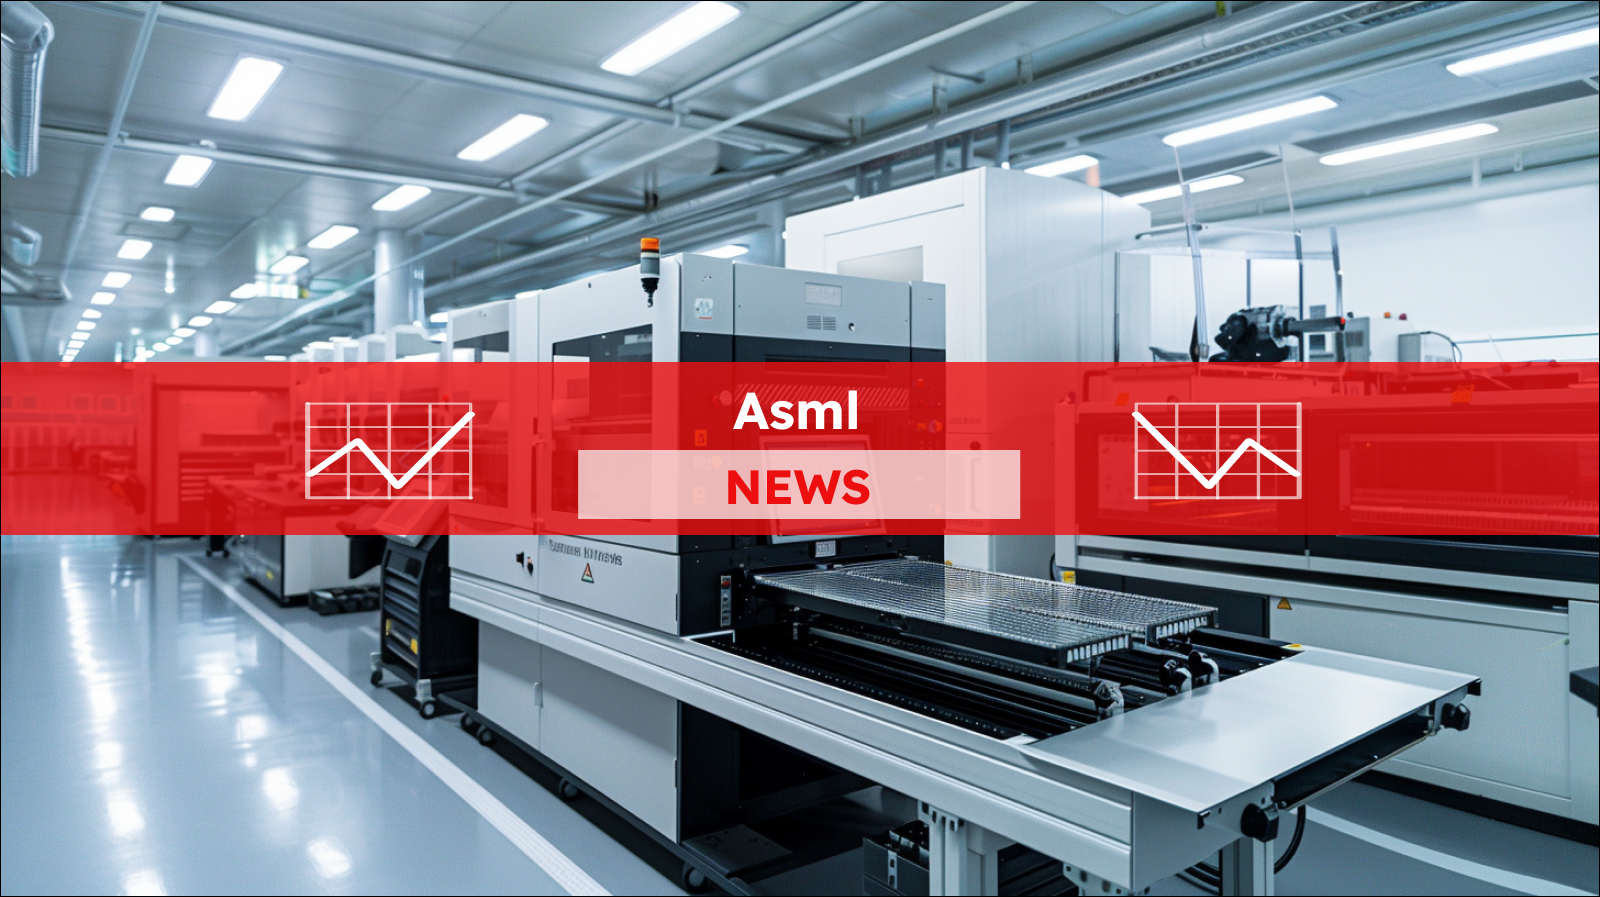 Eine fortschrittliche Lithographiesysteme in einer , hellen Halbleiterproduktionsanlage, mit einem Asml NEWS Banner